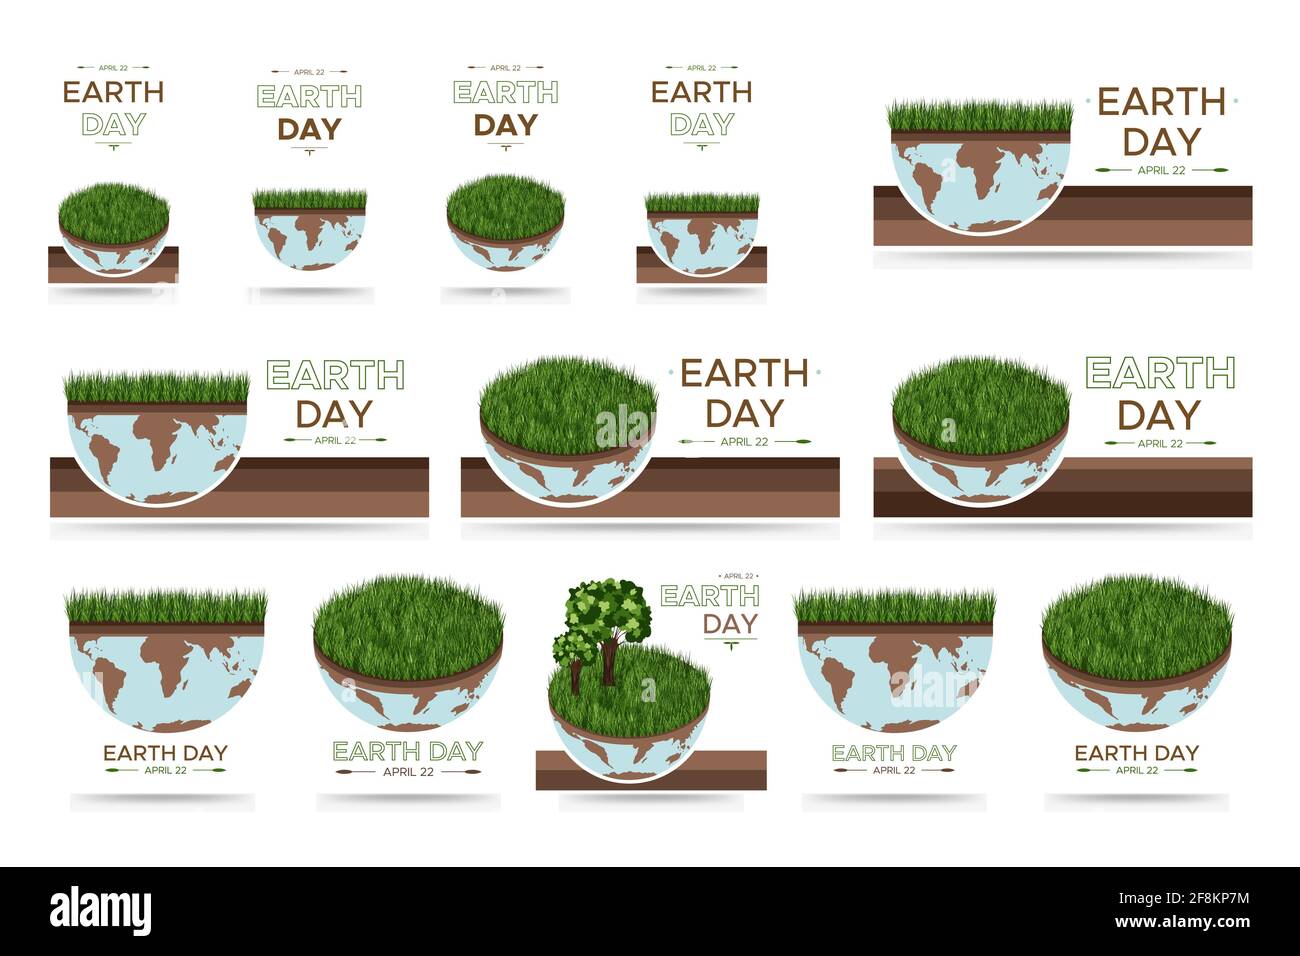 Happy Earth Day - große Reihe von Vektor-Öko-Illustrationen eines Umweltkonzepts, um die Welt zu retten. Konzept Vision zum Thema der Rettung des Planeten. Stock Vektor